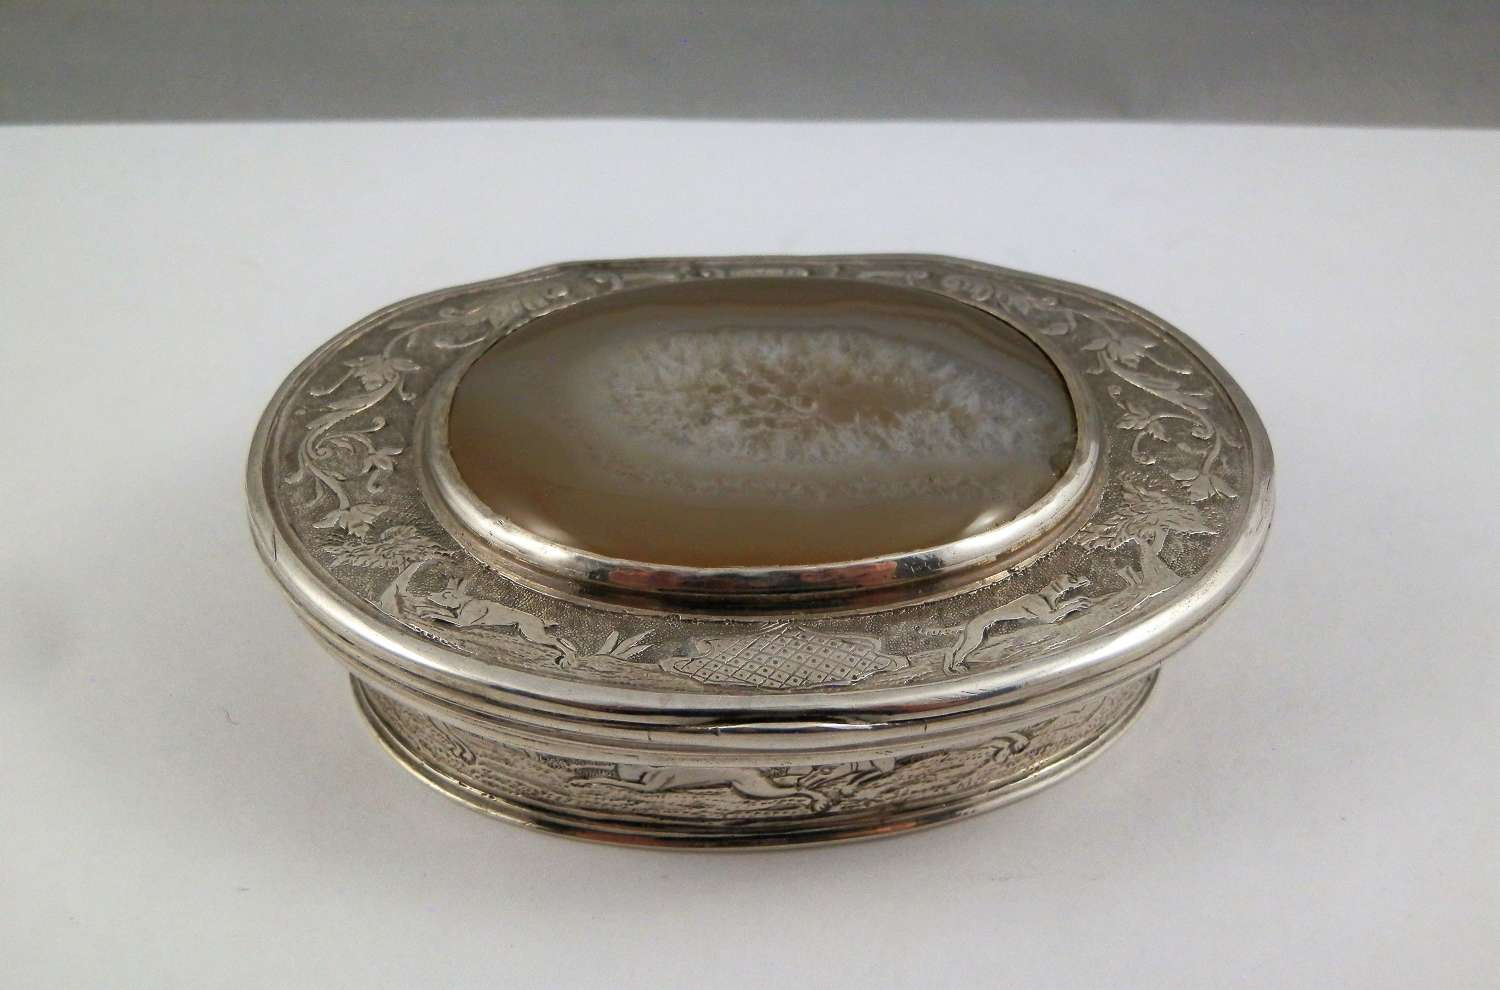 Scottish silver and agate snuff box c. 1750